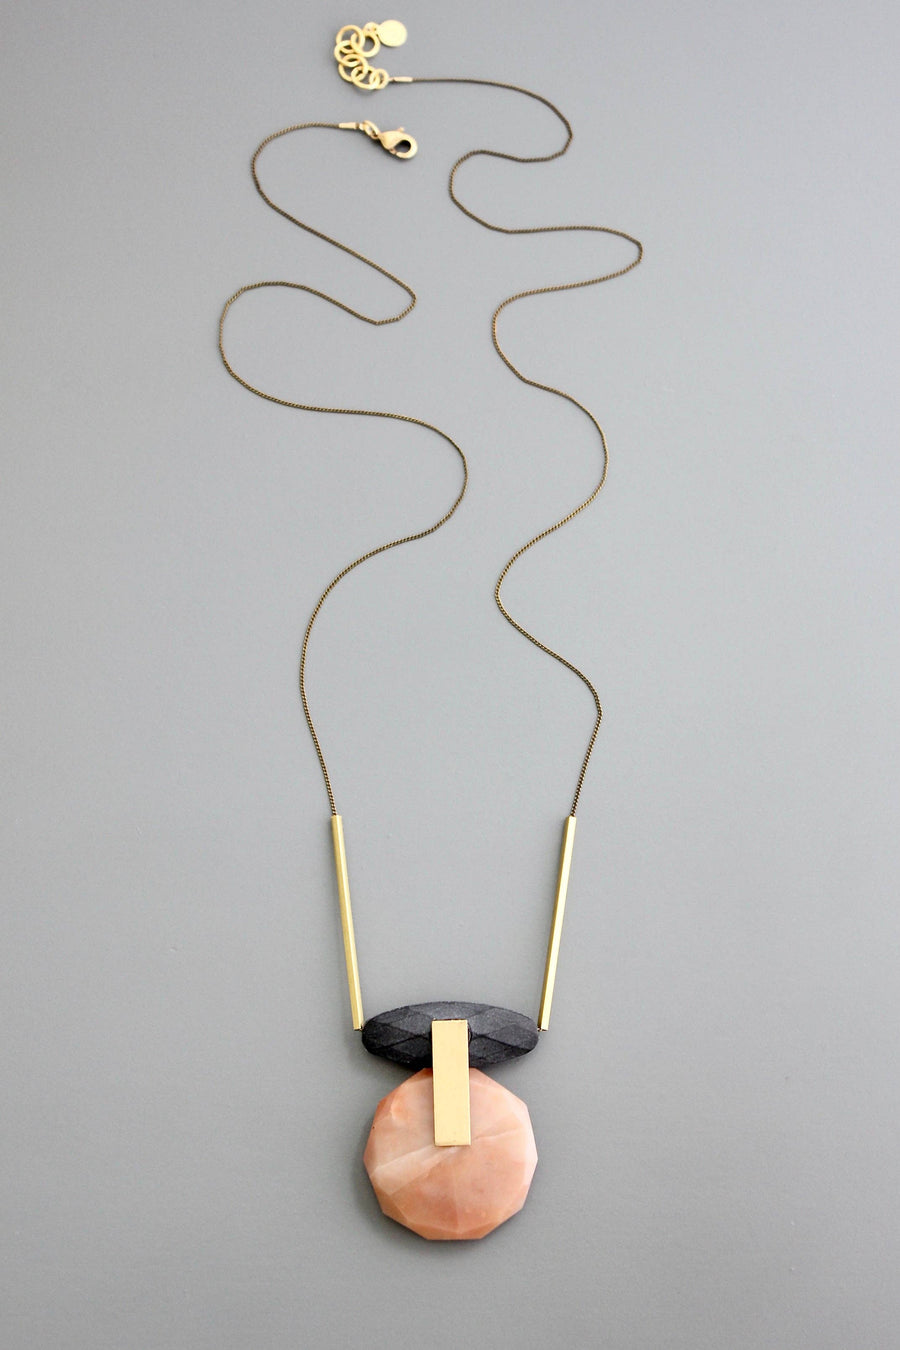 Matte Black + Agate Pendant Necklace